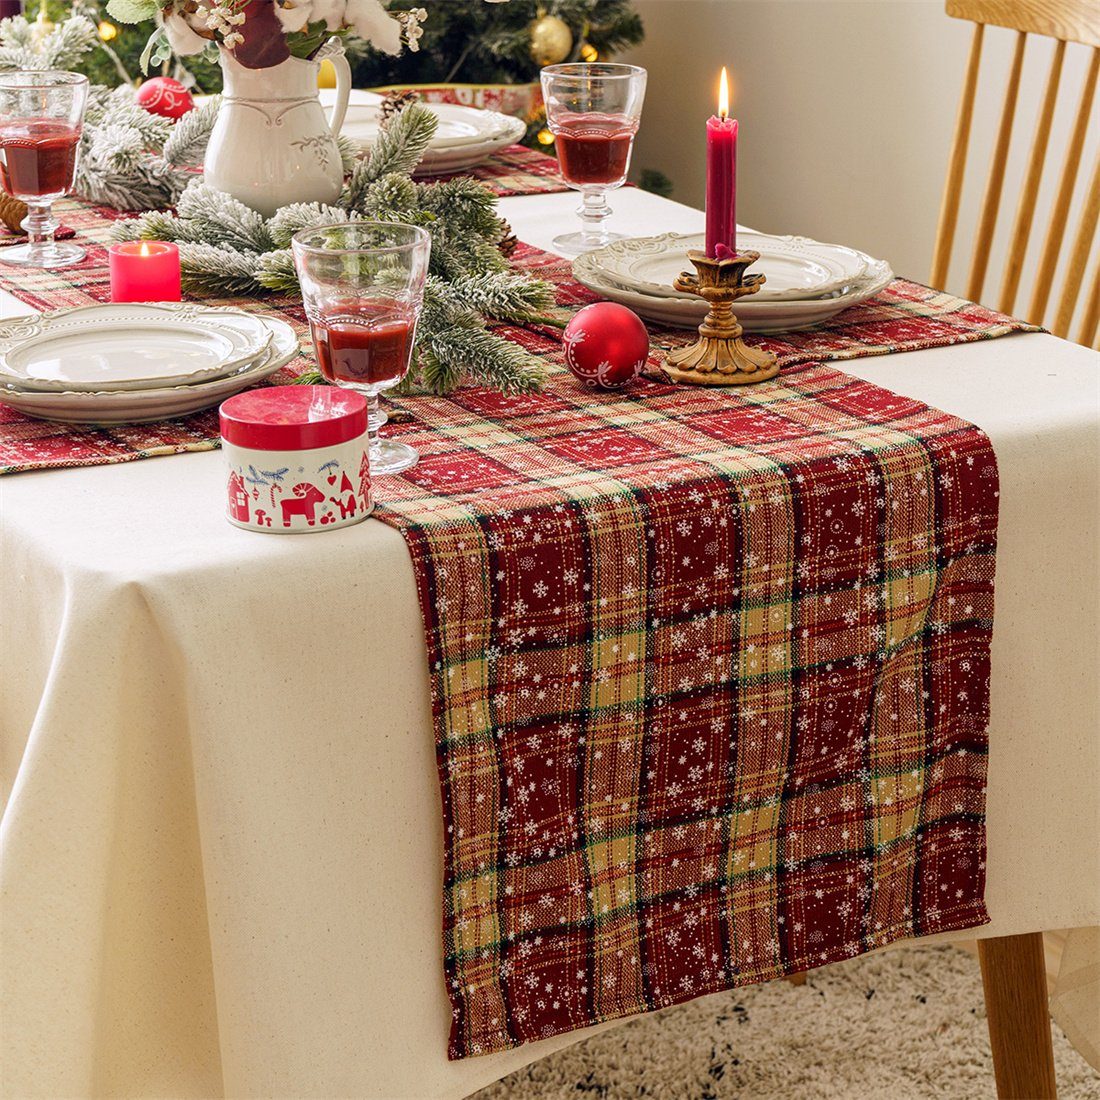 Tischläufer Tischläufer, DÖRÖY festliche 40*200cm bedruckter Tischfahnen Weihnachtsdekoration